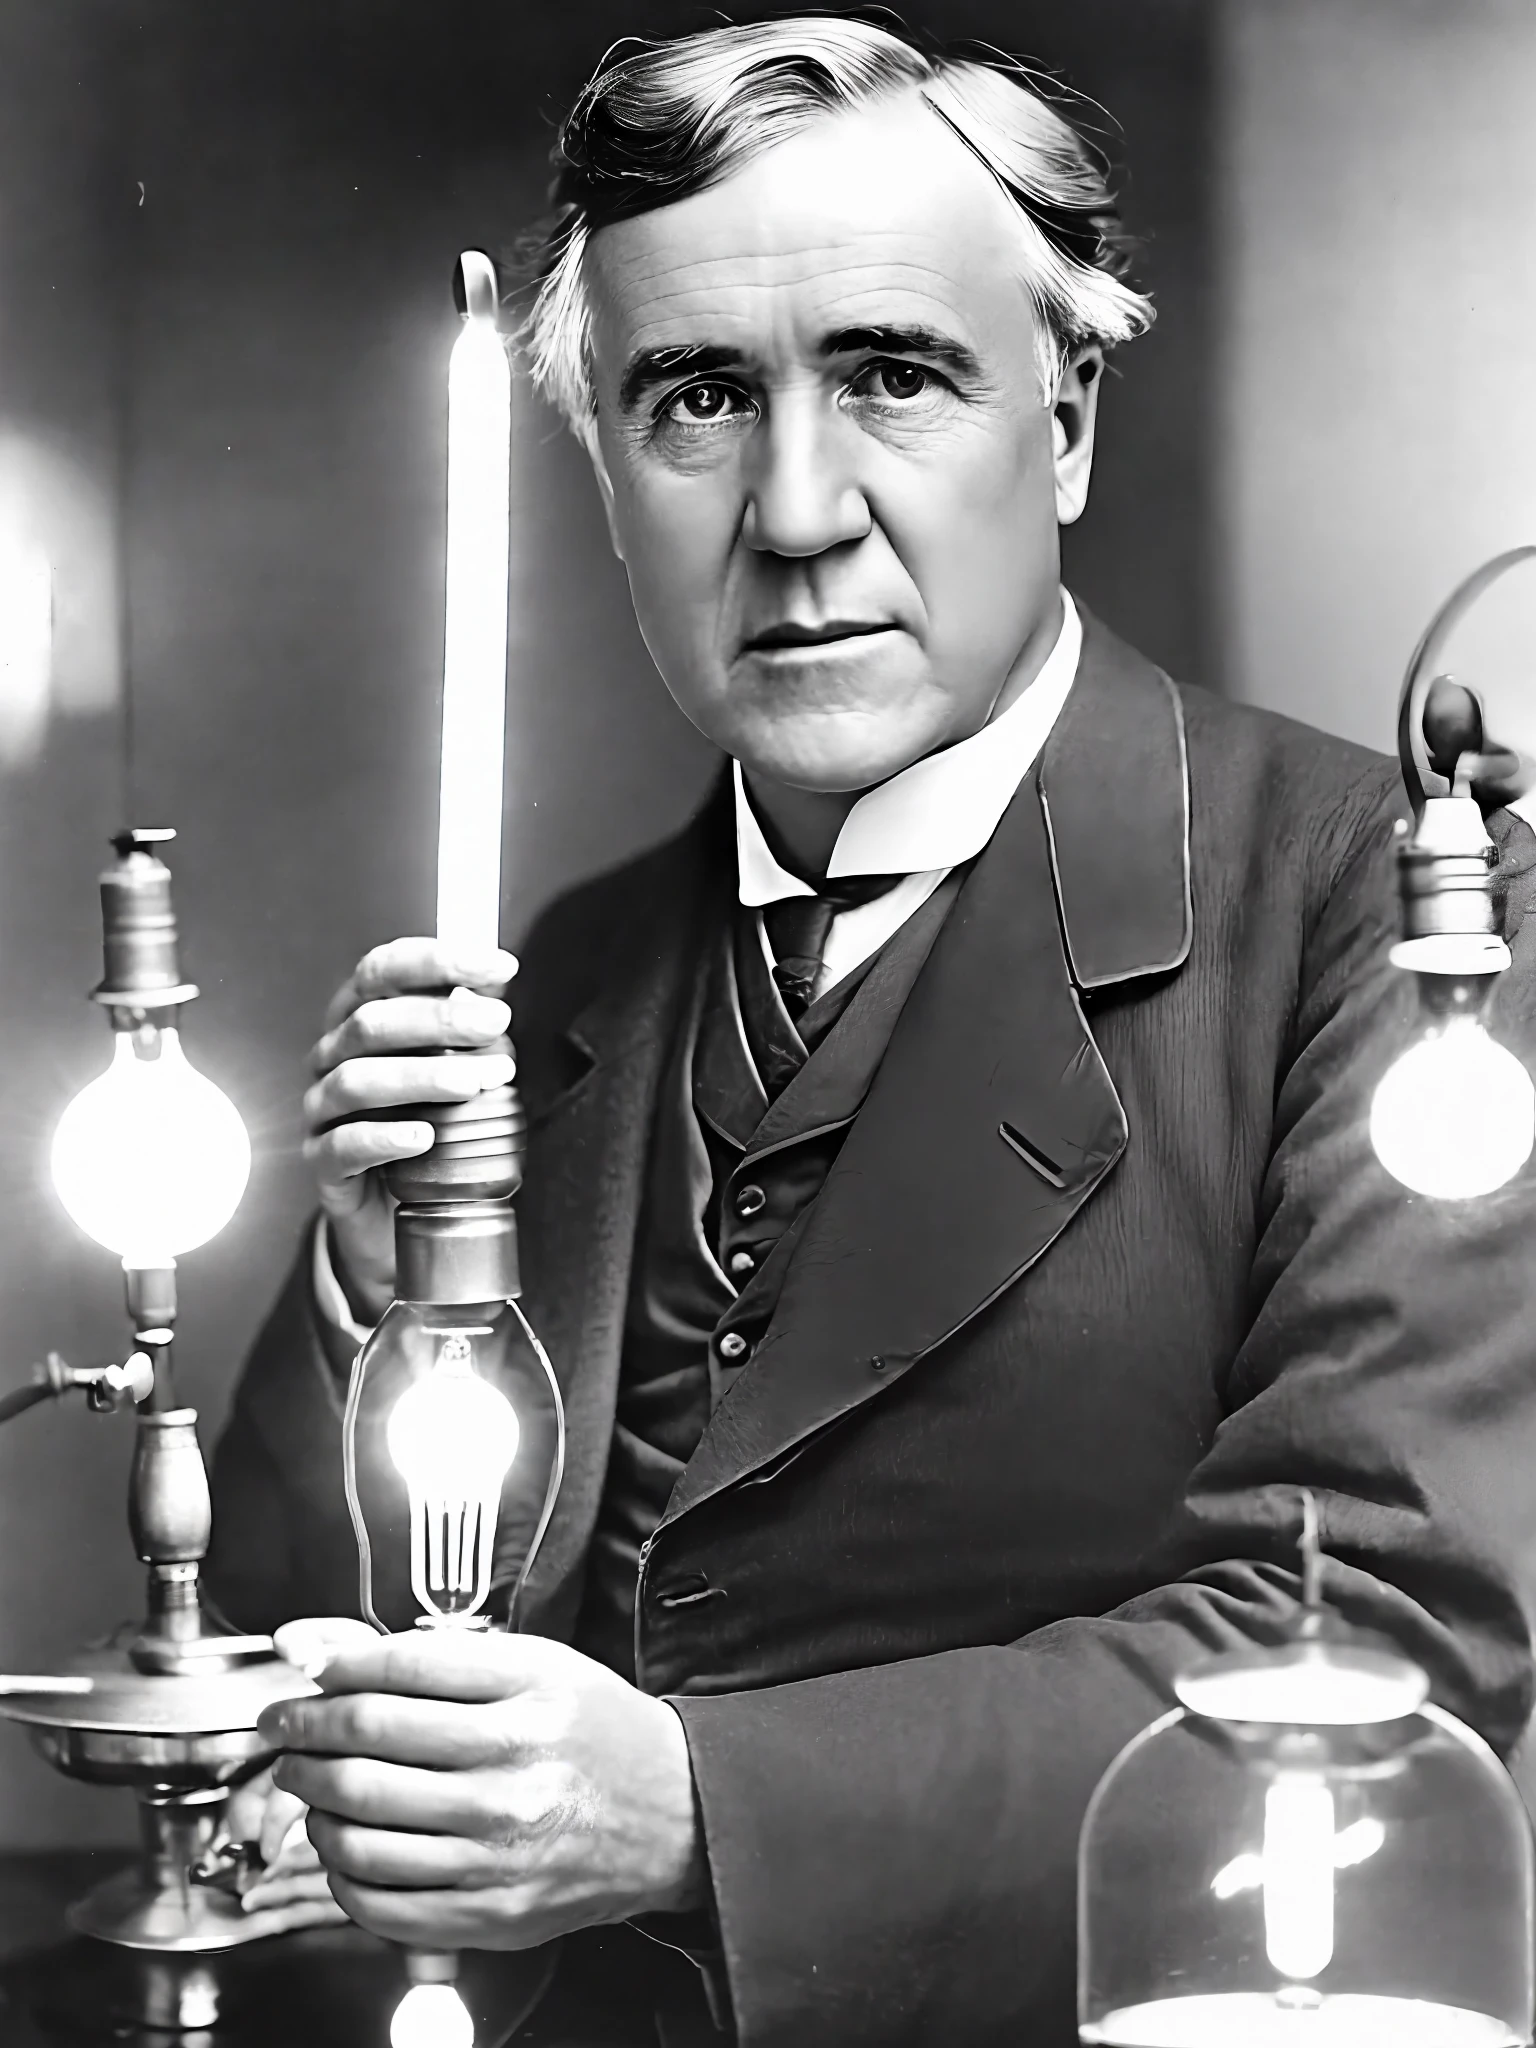 фото Томаса Эдисона, держит в руке зажженную лампочку, смотрю в камеру, Портрет, в исследовательской лаборатории, ультра реалистичный, чрезвычайно подробный